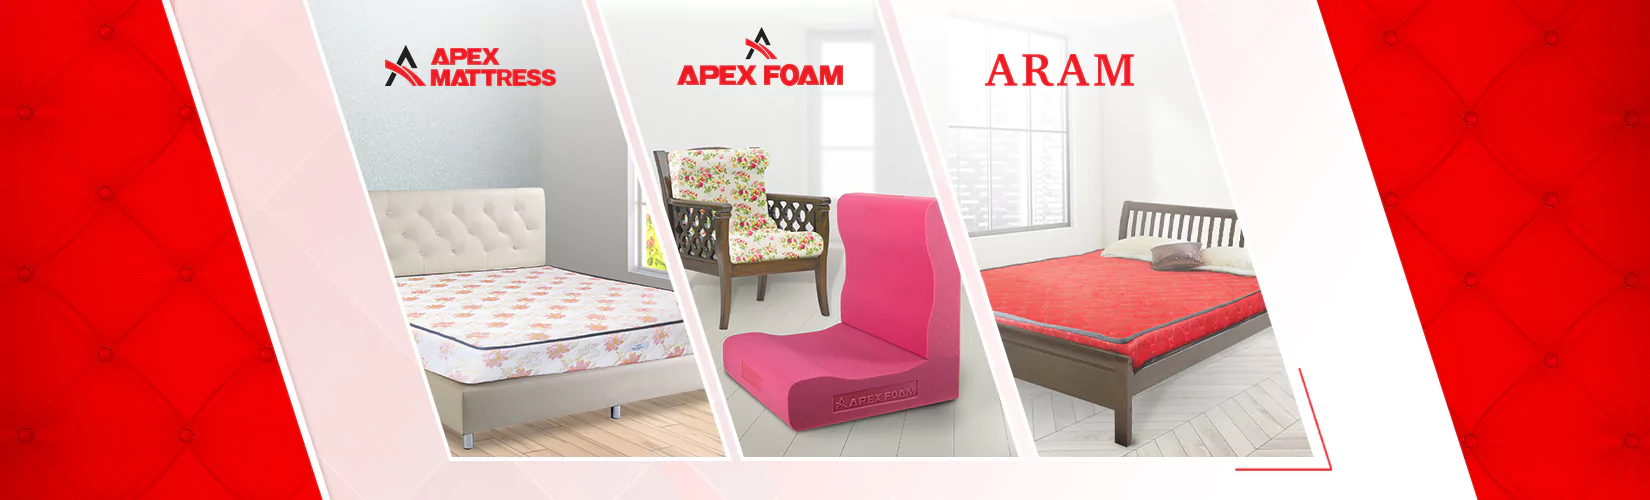 Apex Foam Mattress Aram One